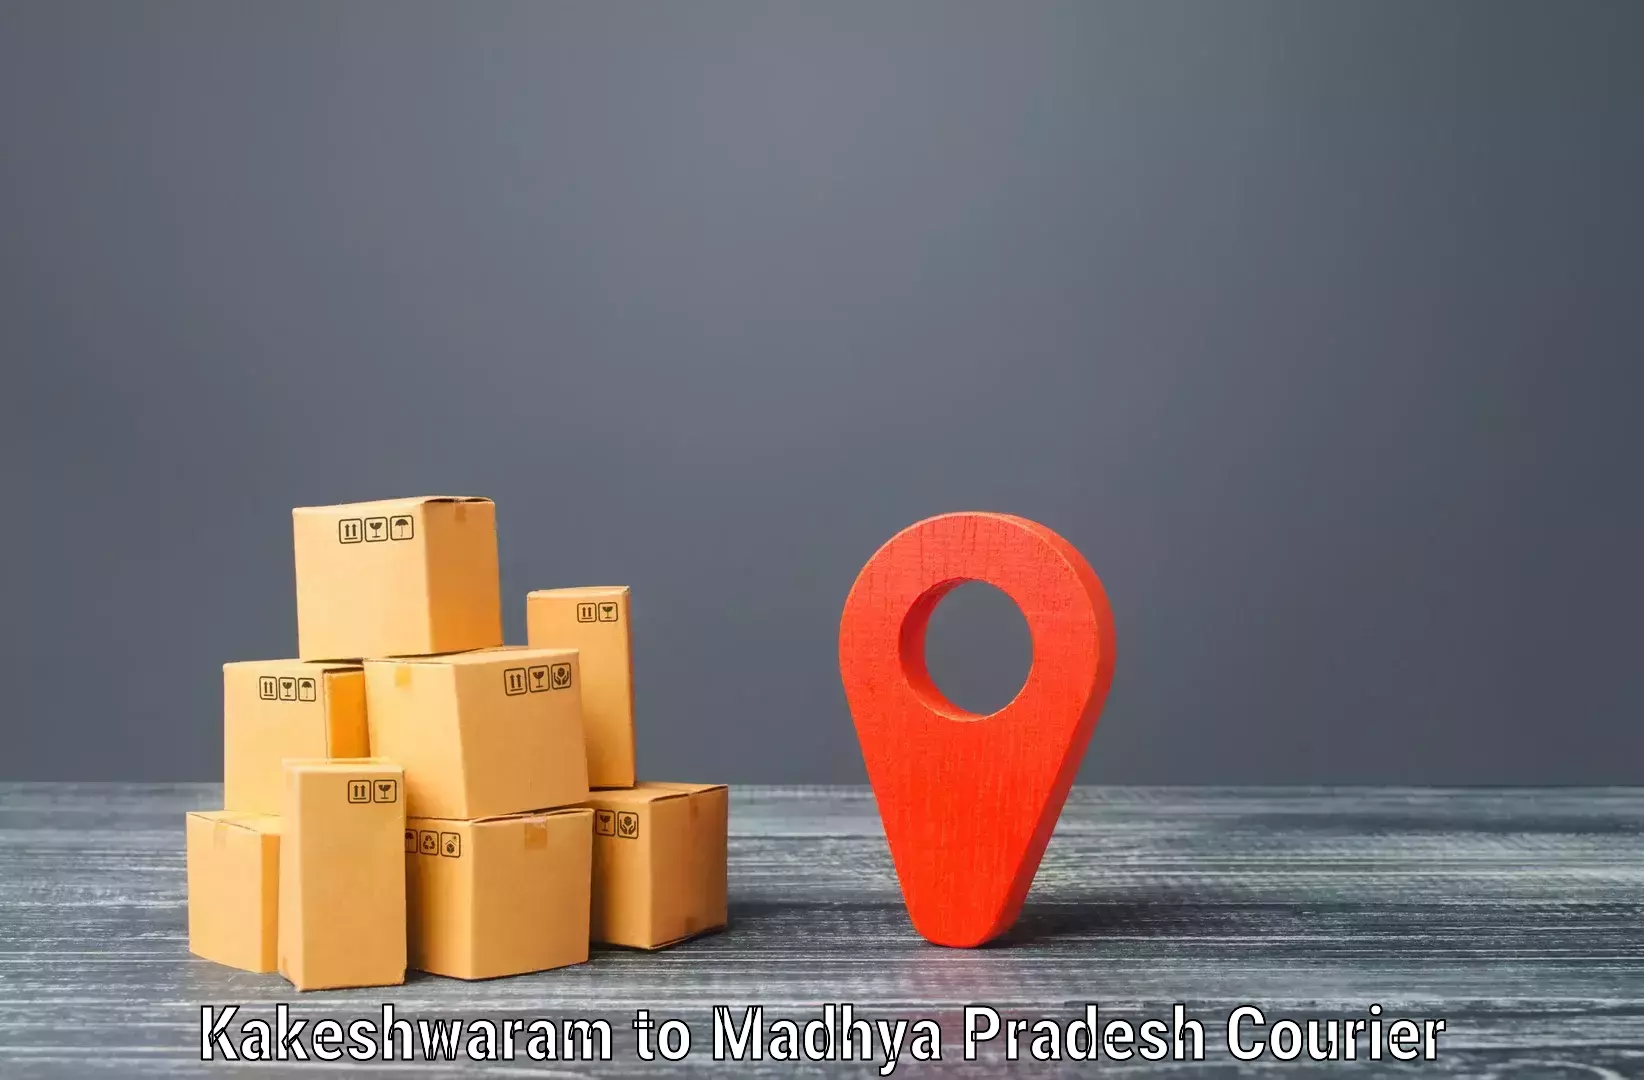 Express shipping Kakeshwaram to IIIT Bhopal